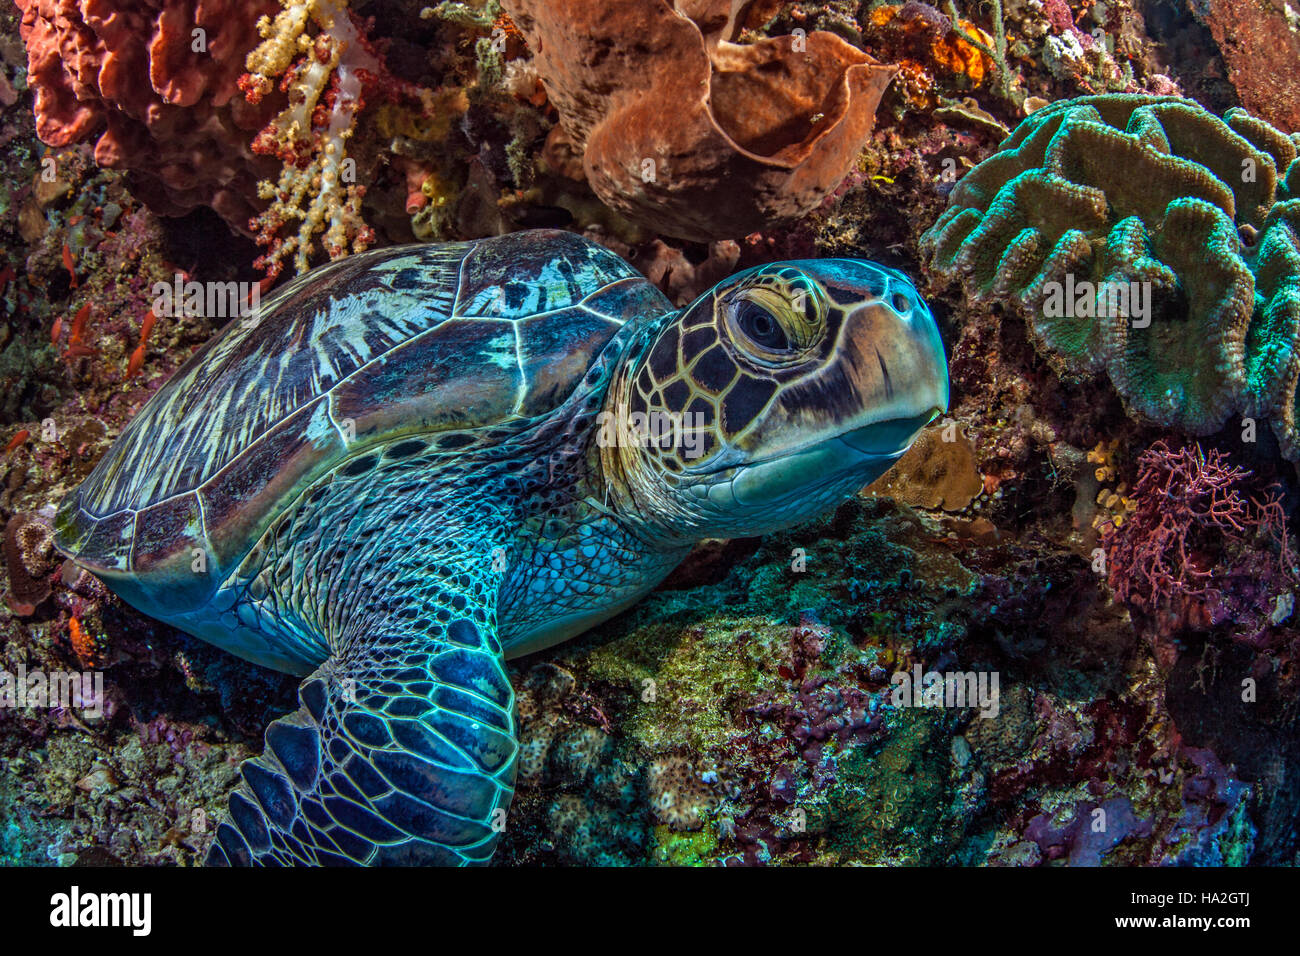 Tortugas marinas descansa dentro de una gran esponja Oreja de Elefante en la empinada pared de coral. Foto de stock